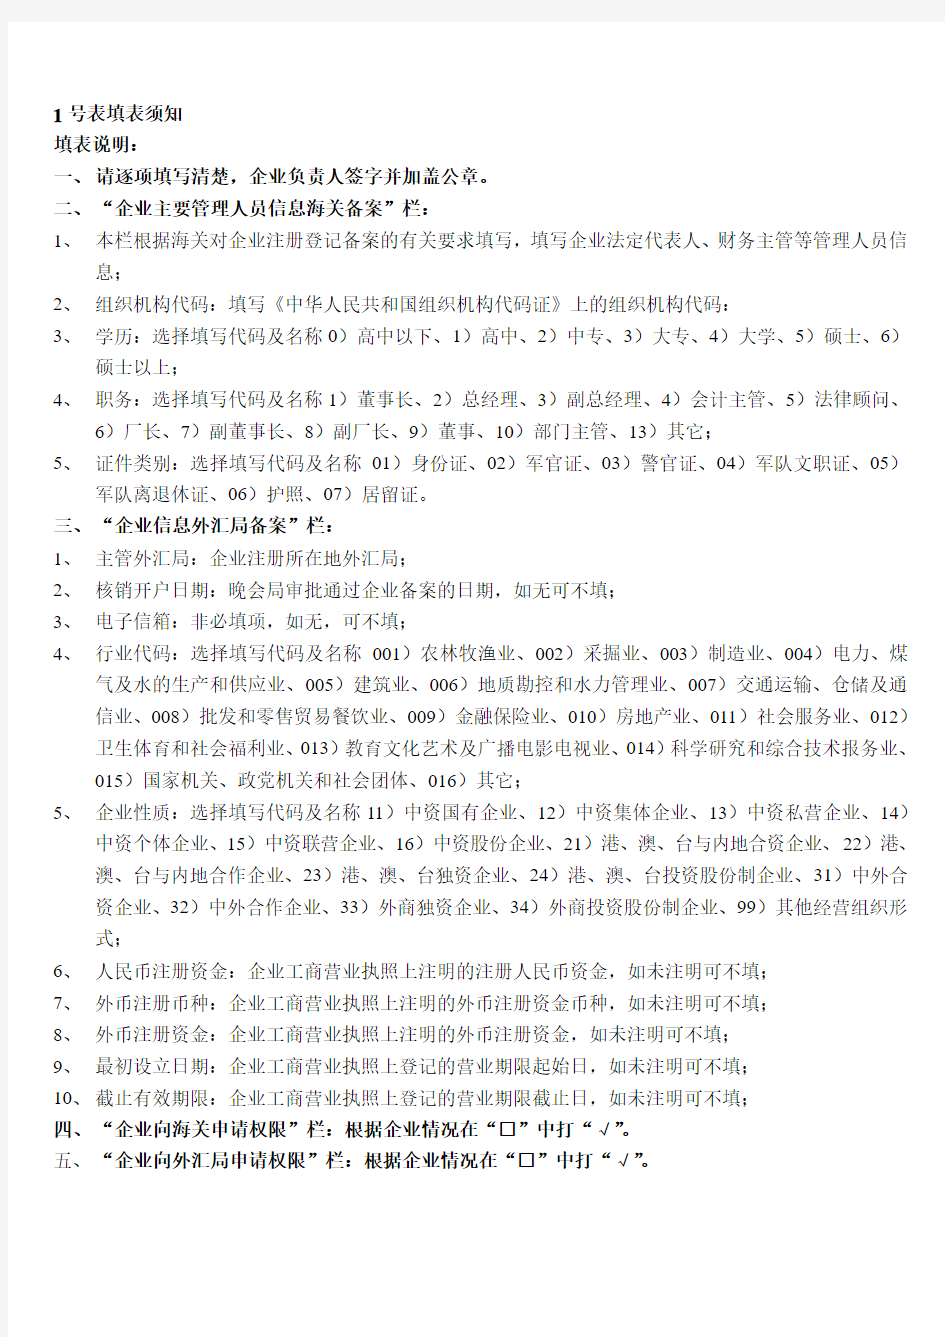 中国电子口岸企业情况登记表企业主要管理人员信息海关备案